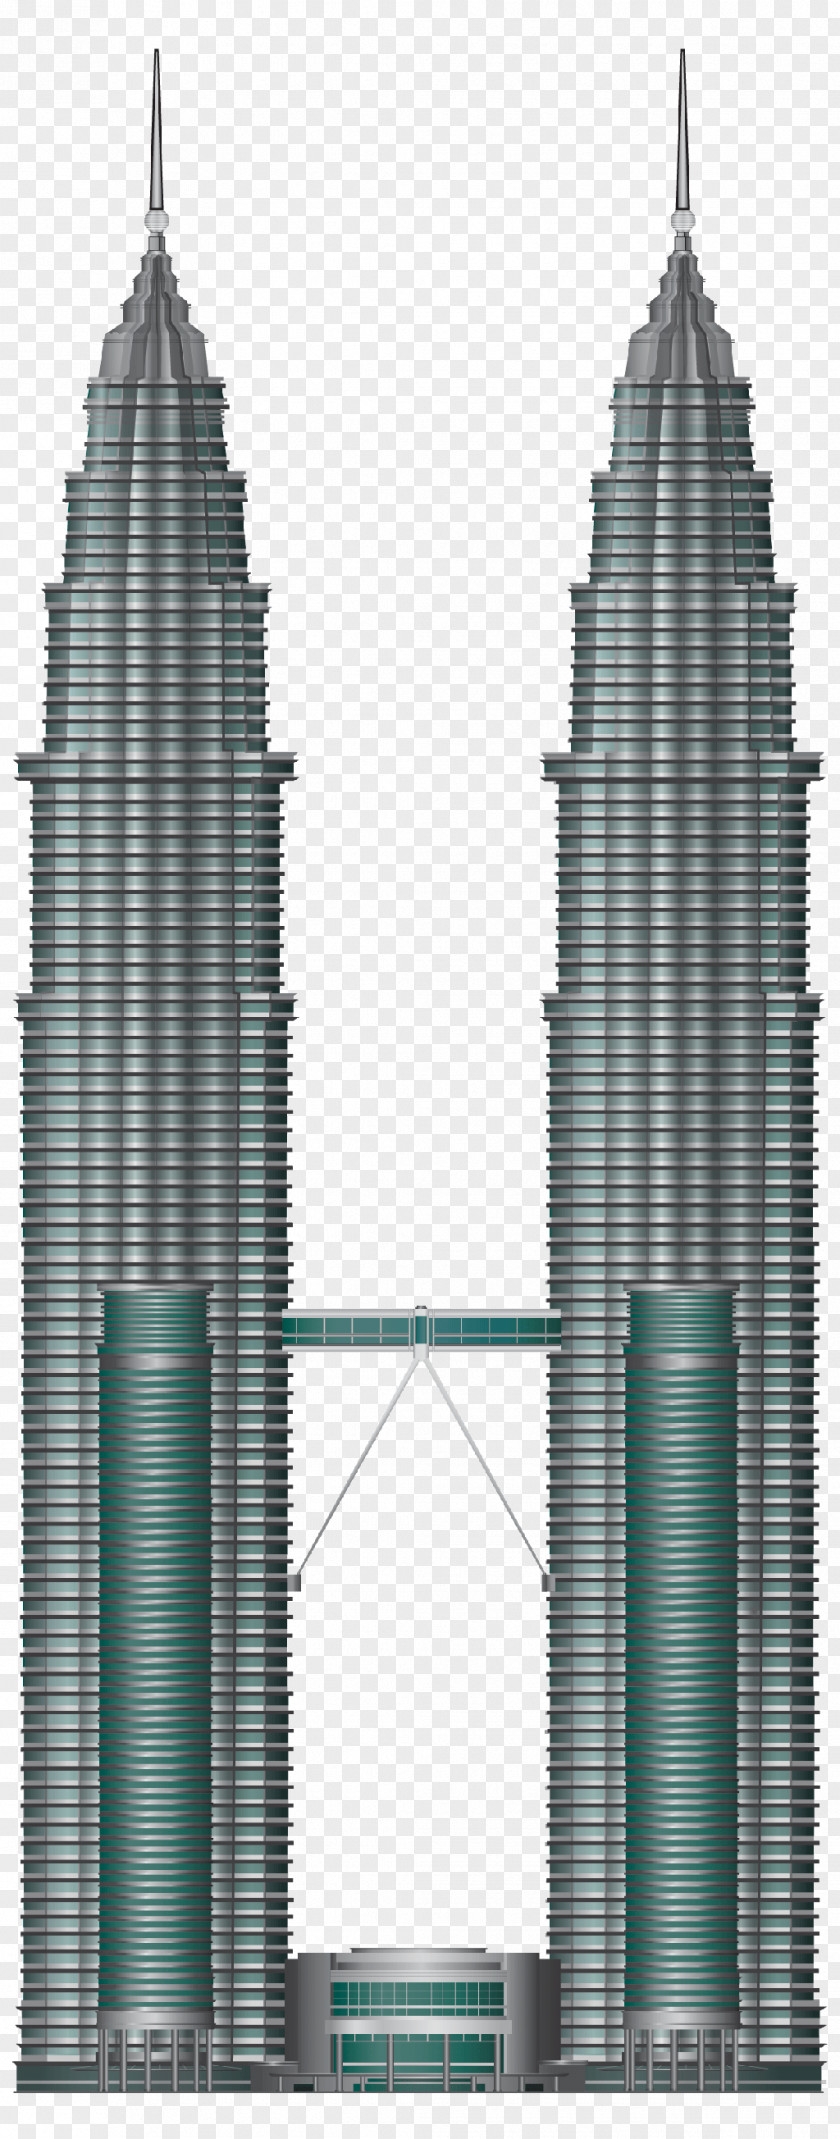 Burj Khalifa Petronas Towers Building Skyscraper Facade PNG